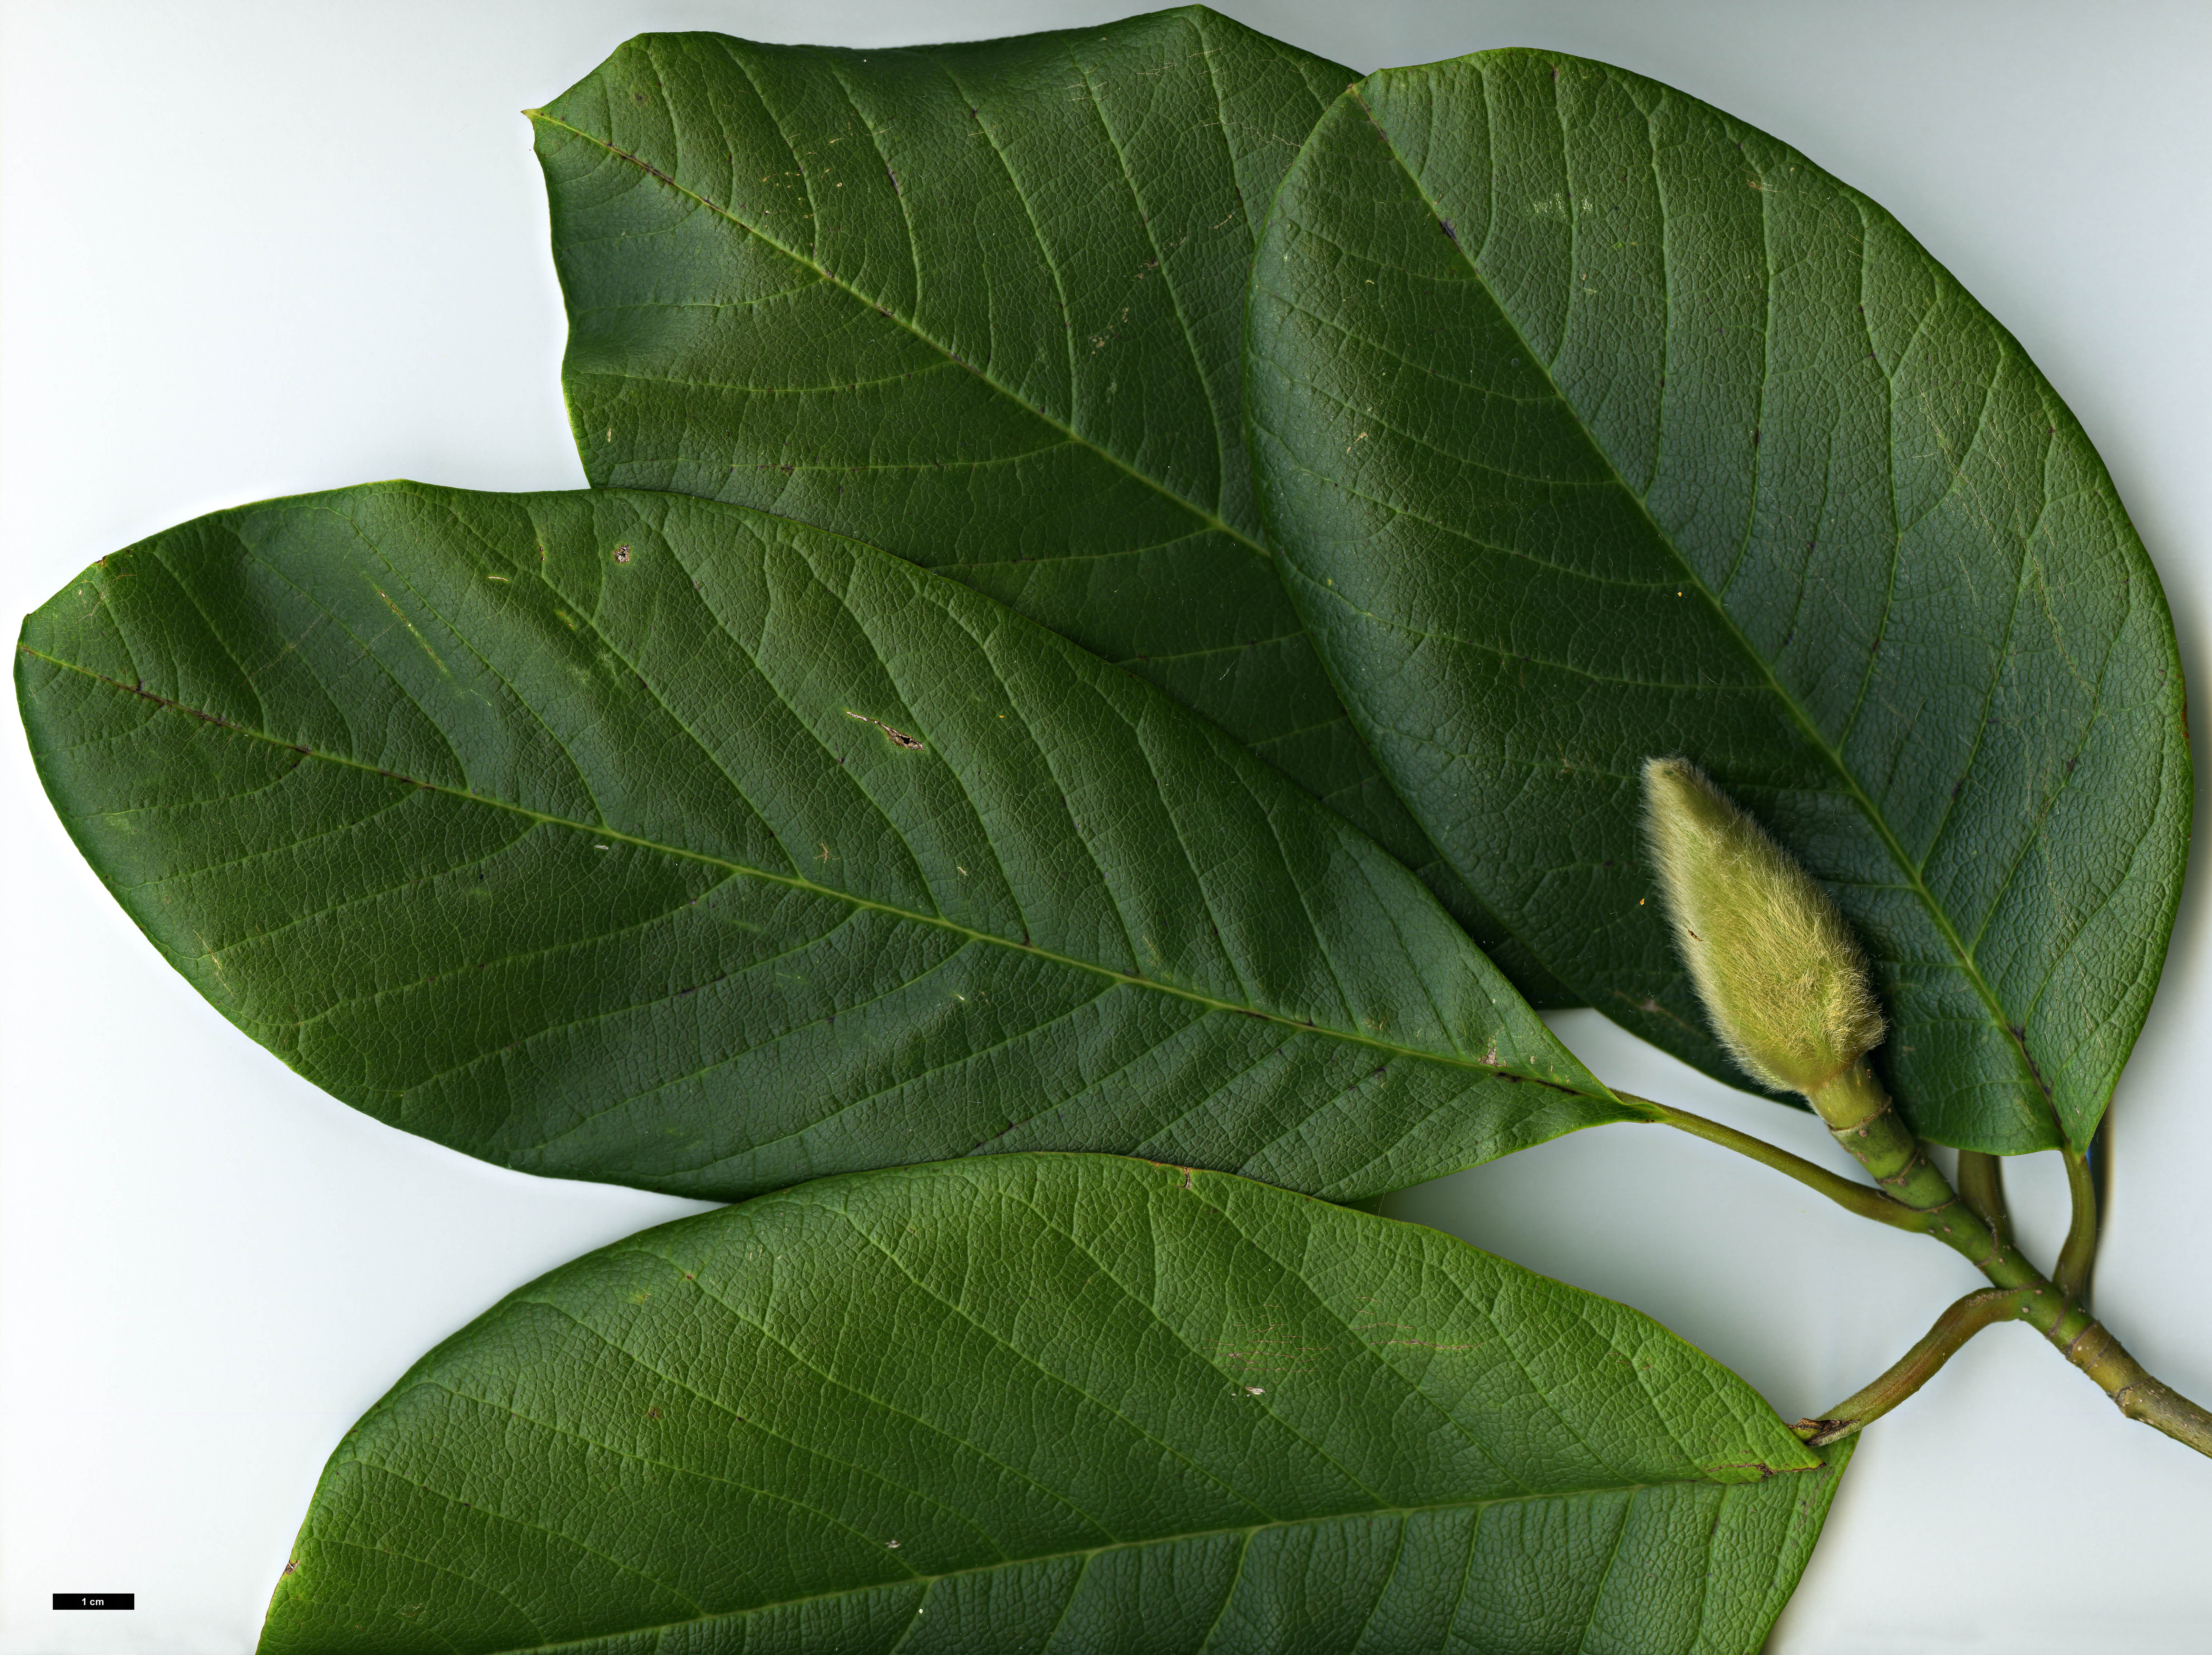 High resolution image: Family: Magnoliaceae - Genus: Magnolia - Taxon: sargentiana - SpeciesSub: var. robusta